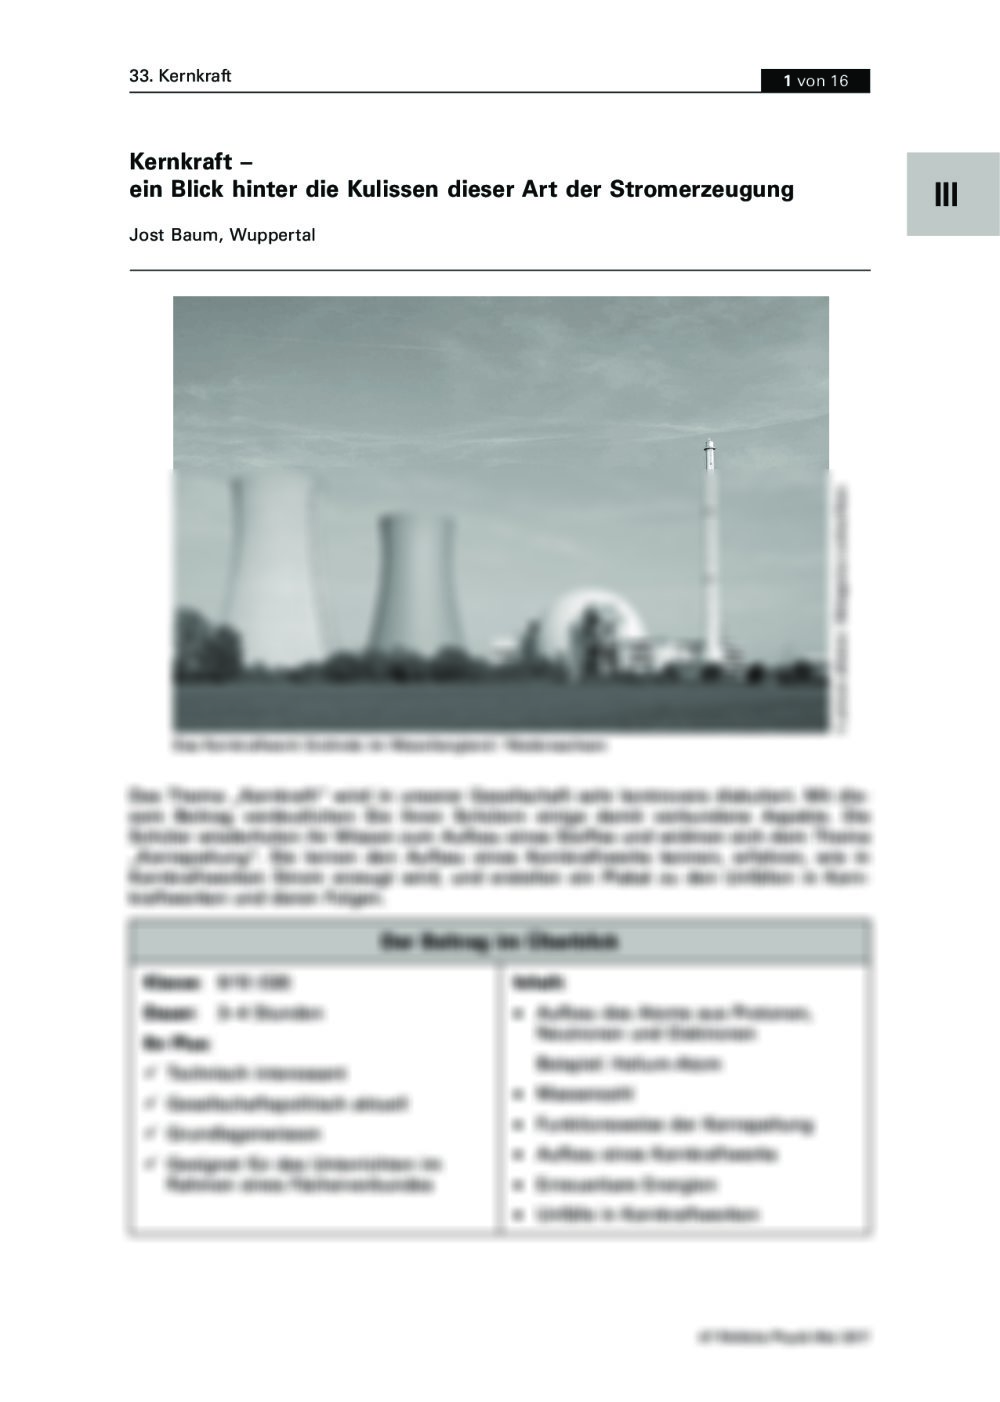 Ein Blick hinter die Kulissen der Kernkraft - Seite 1